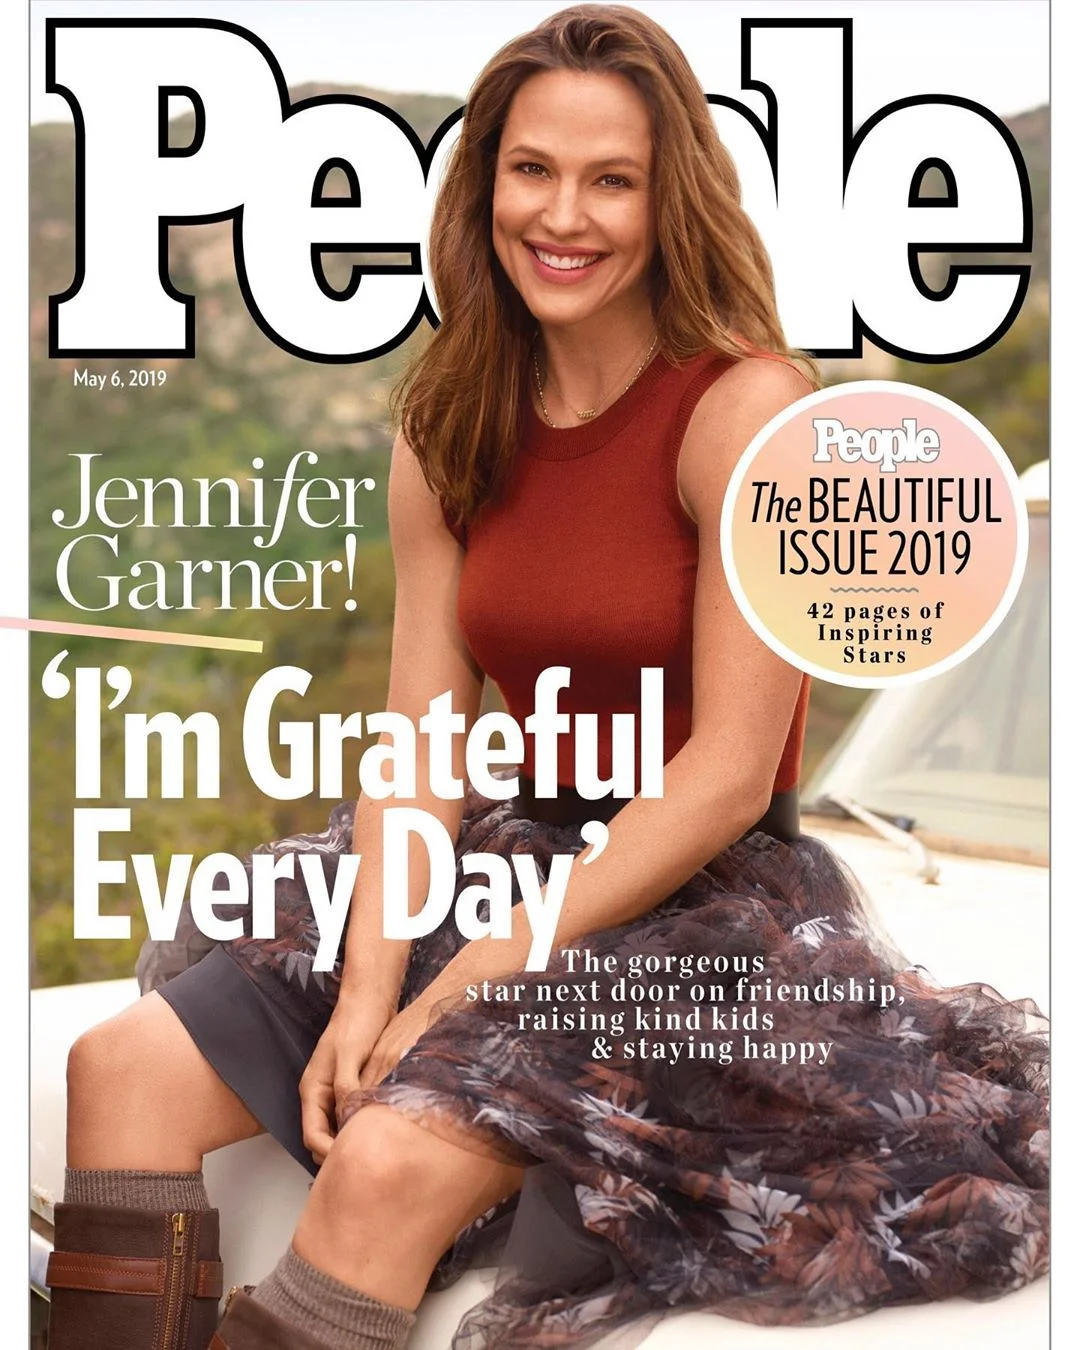 Дженнифер Гарнер - самая красивая женщина мира 2019 по версии журнала People - фото 430745